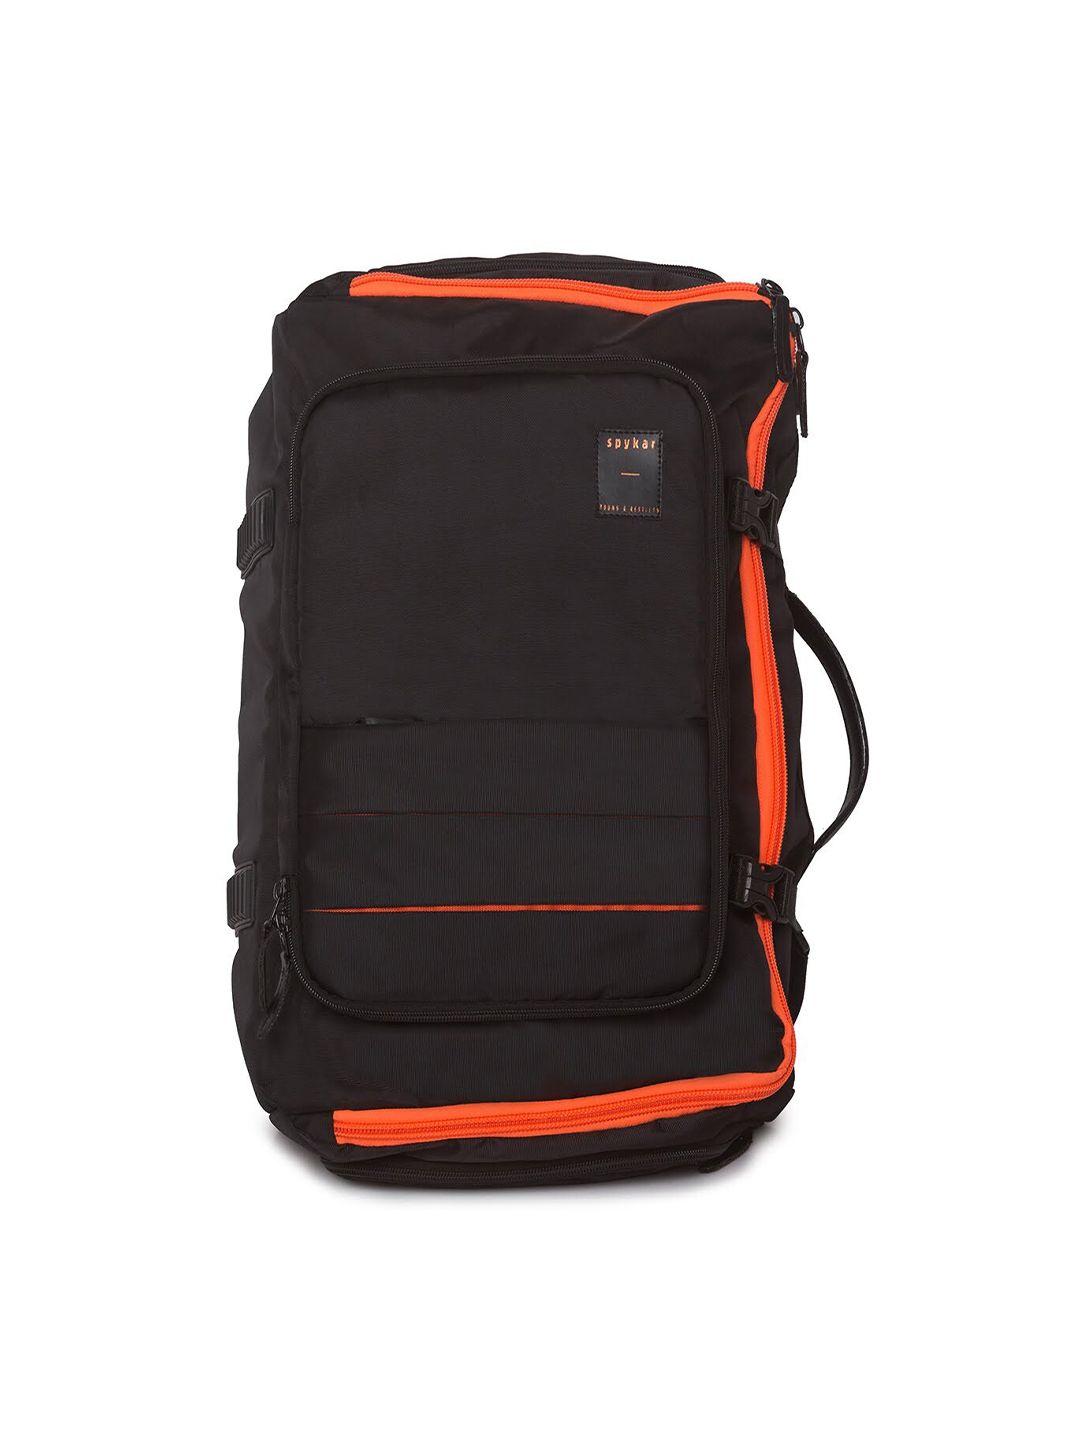 spykar men black & orange backpack with compression straps